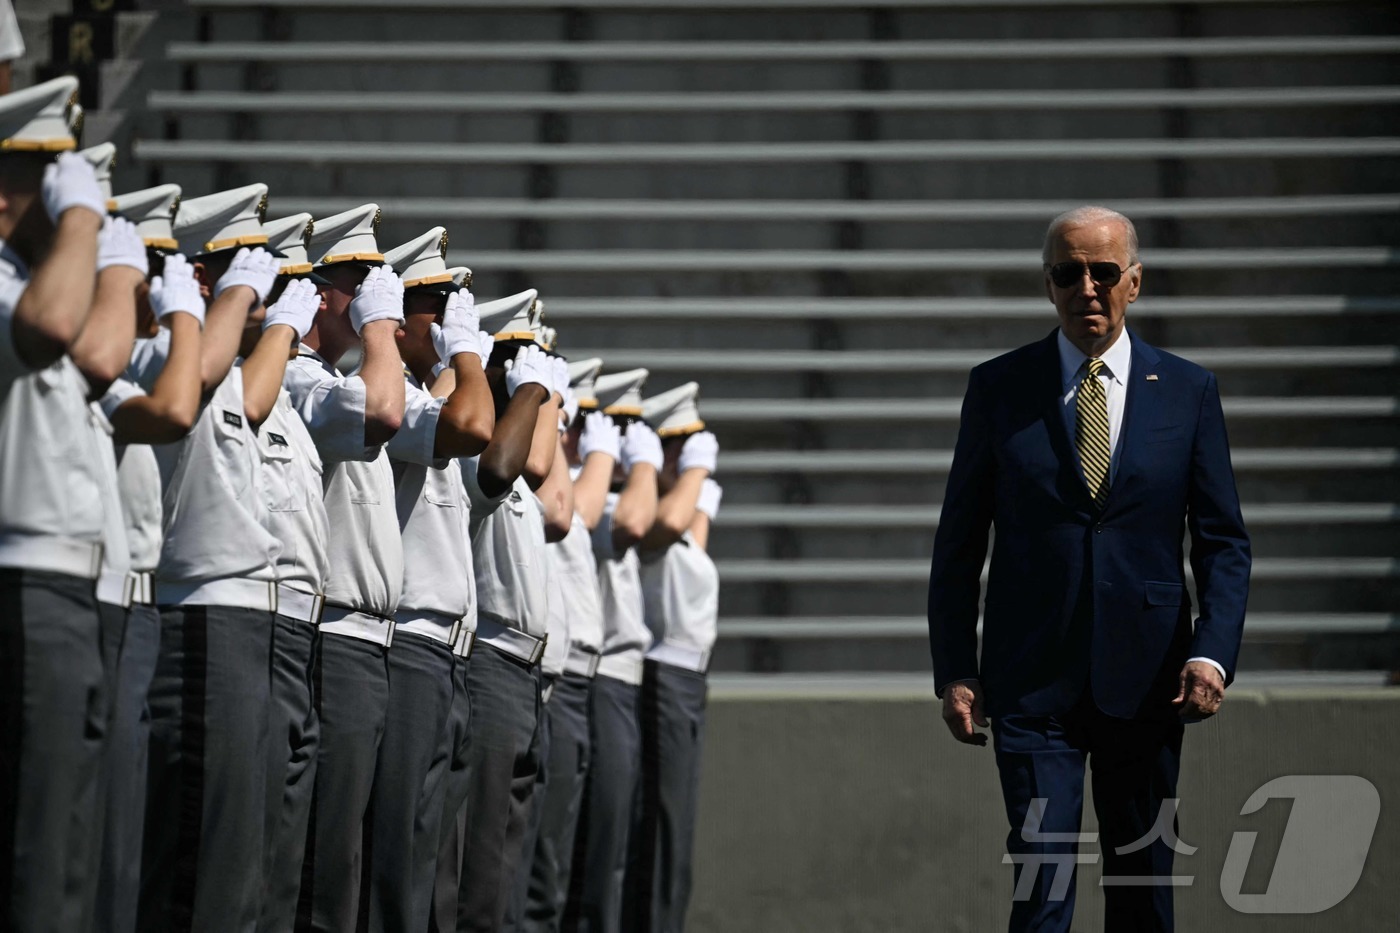 (웨스트 포인트 AFP=뉴스1) 우동명 기자 = 조 바이든 미국 대통령이 25일(현지시간) 뉴욕주 웨스트 포인트에서 열린 육군사관학교 웨스트 포인트 졸업식에 도착을 하고 있다. 2 …